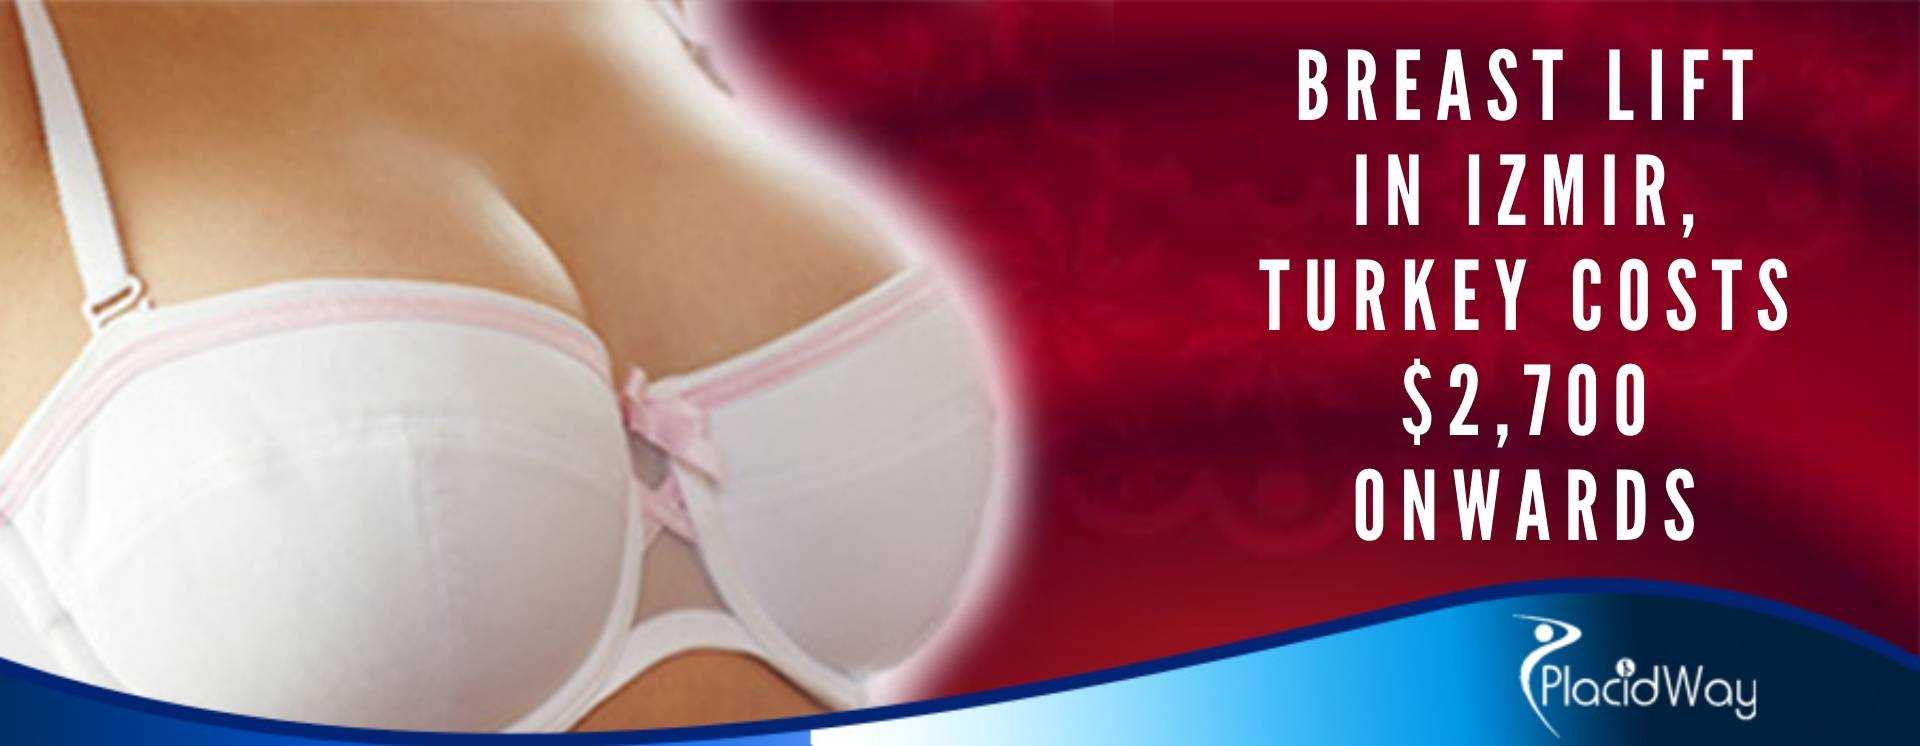 Breast Lift in Izmir, Turkey